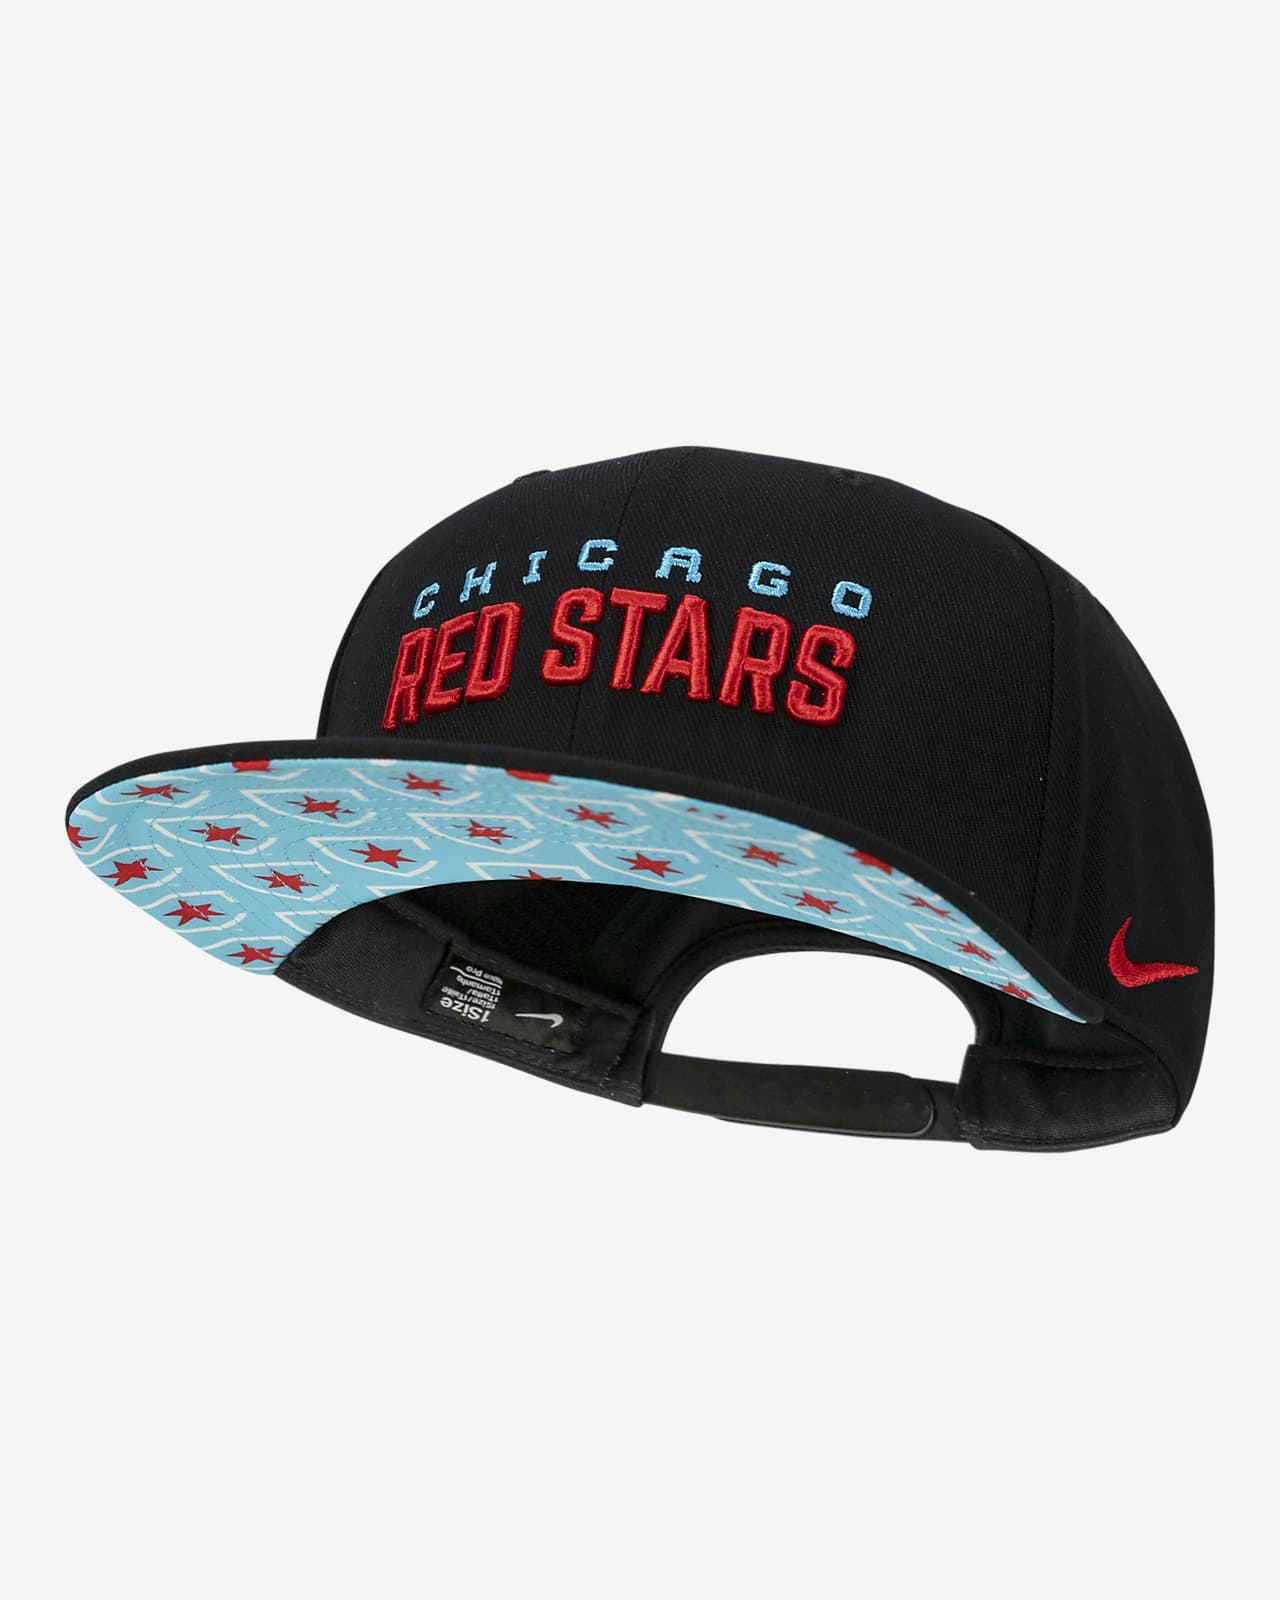 Chicago Red Stars Nike Soccer Hat